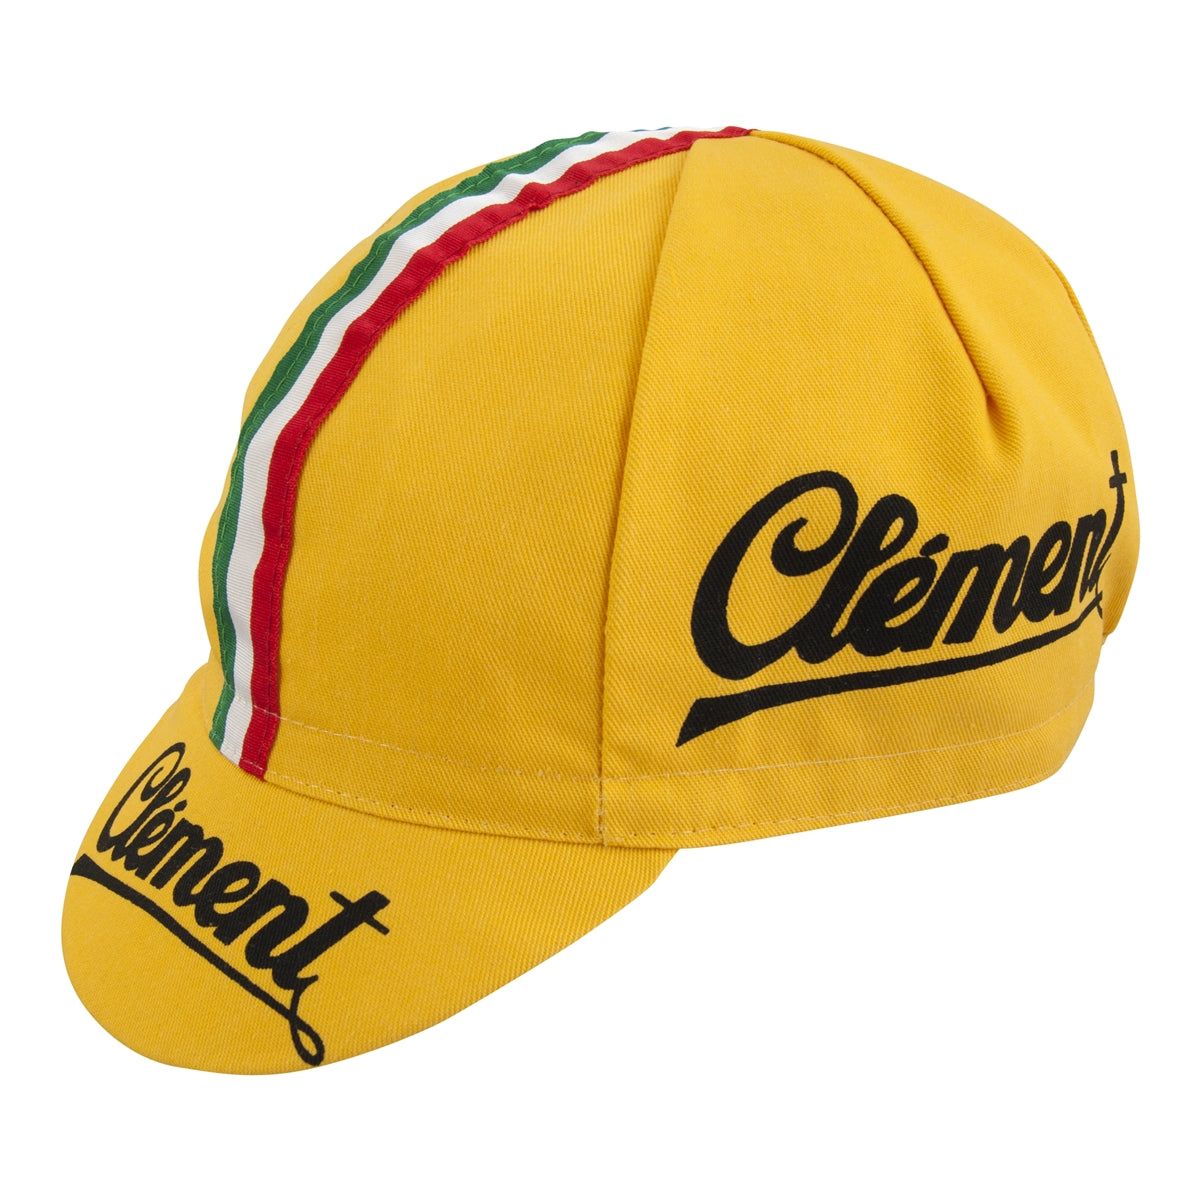 Apis Clement Vintage Cycling Cap